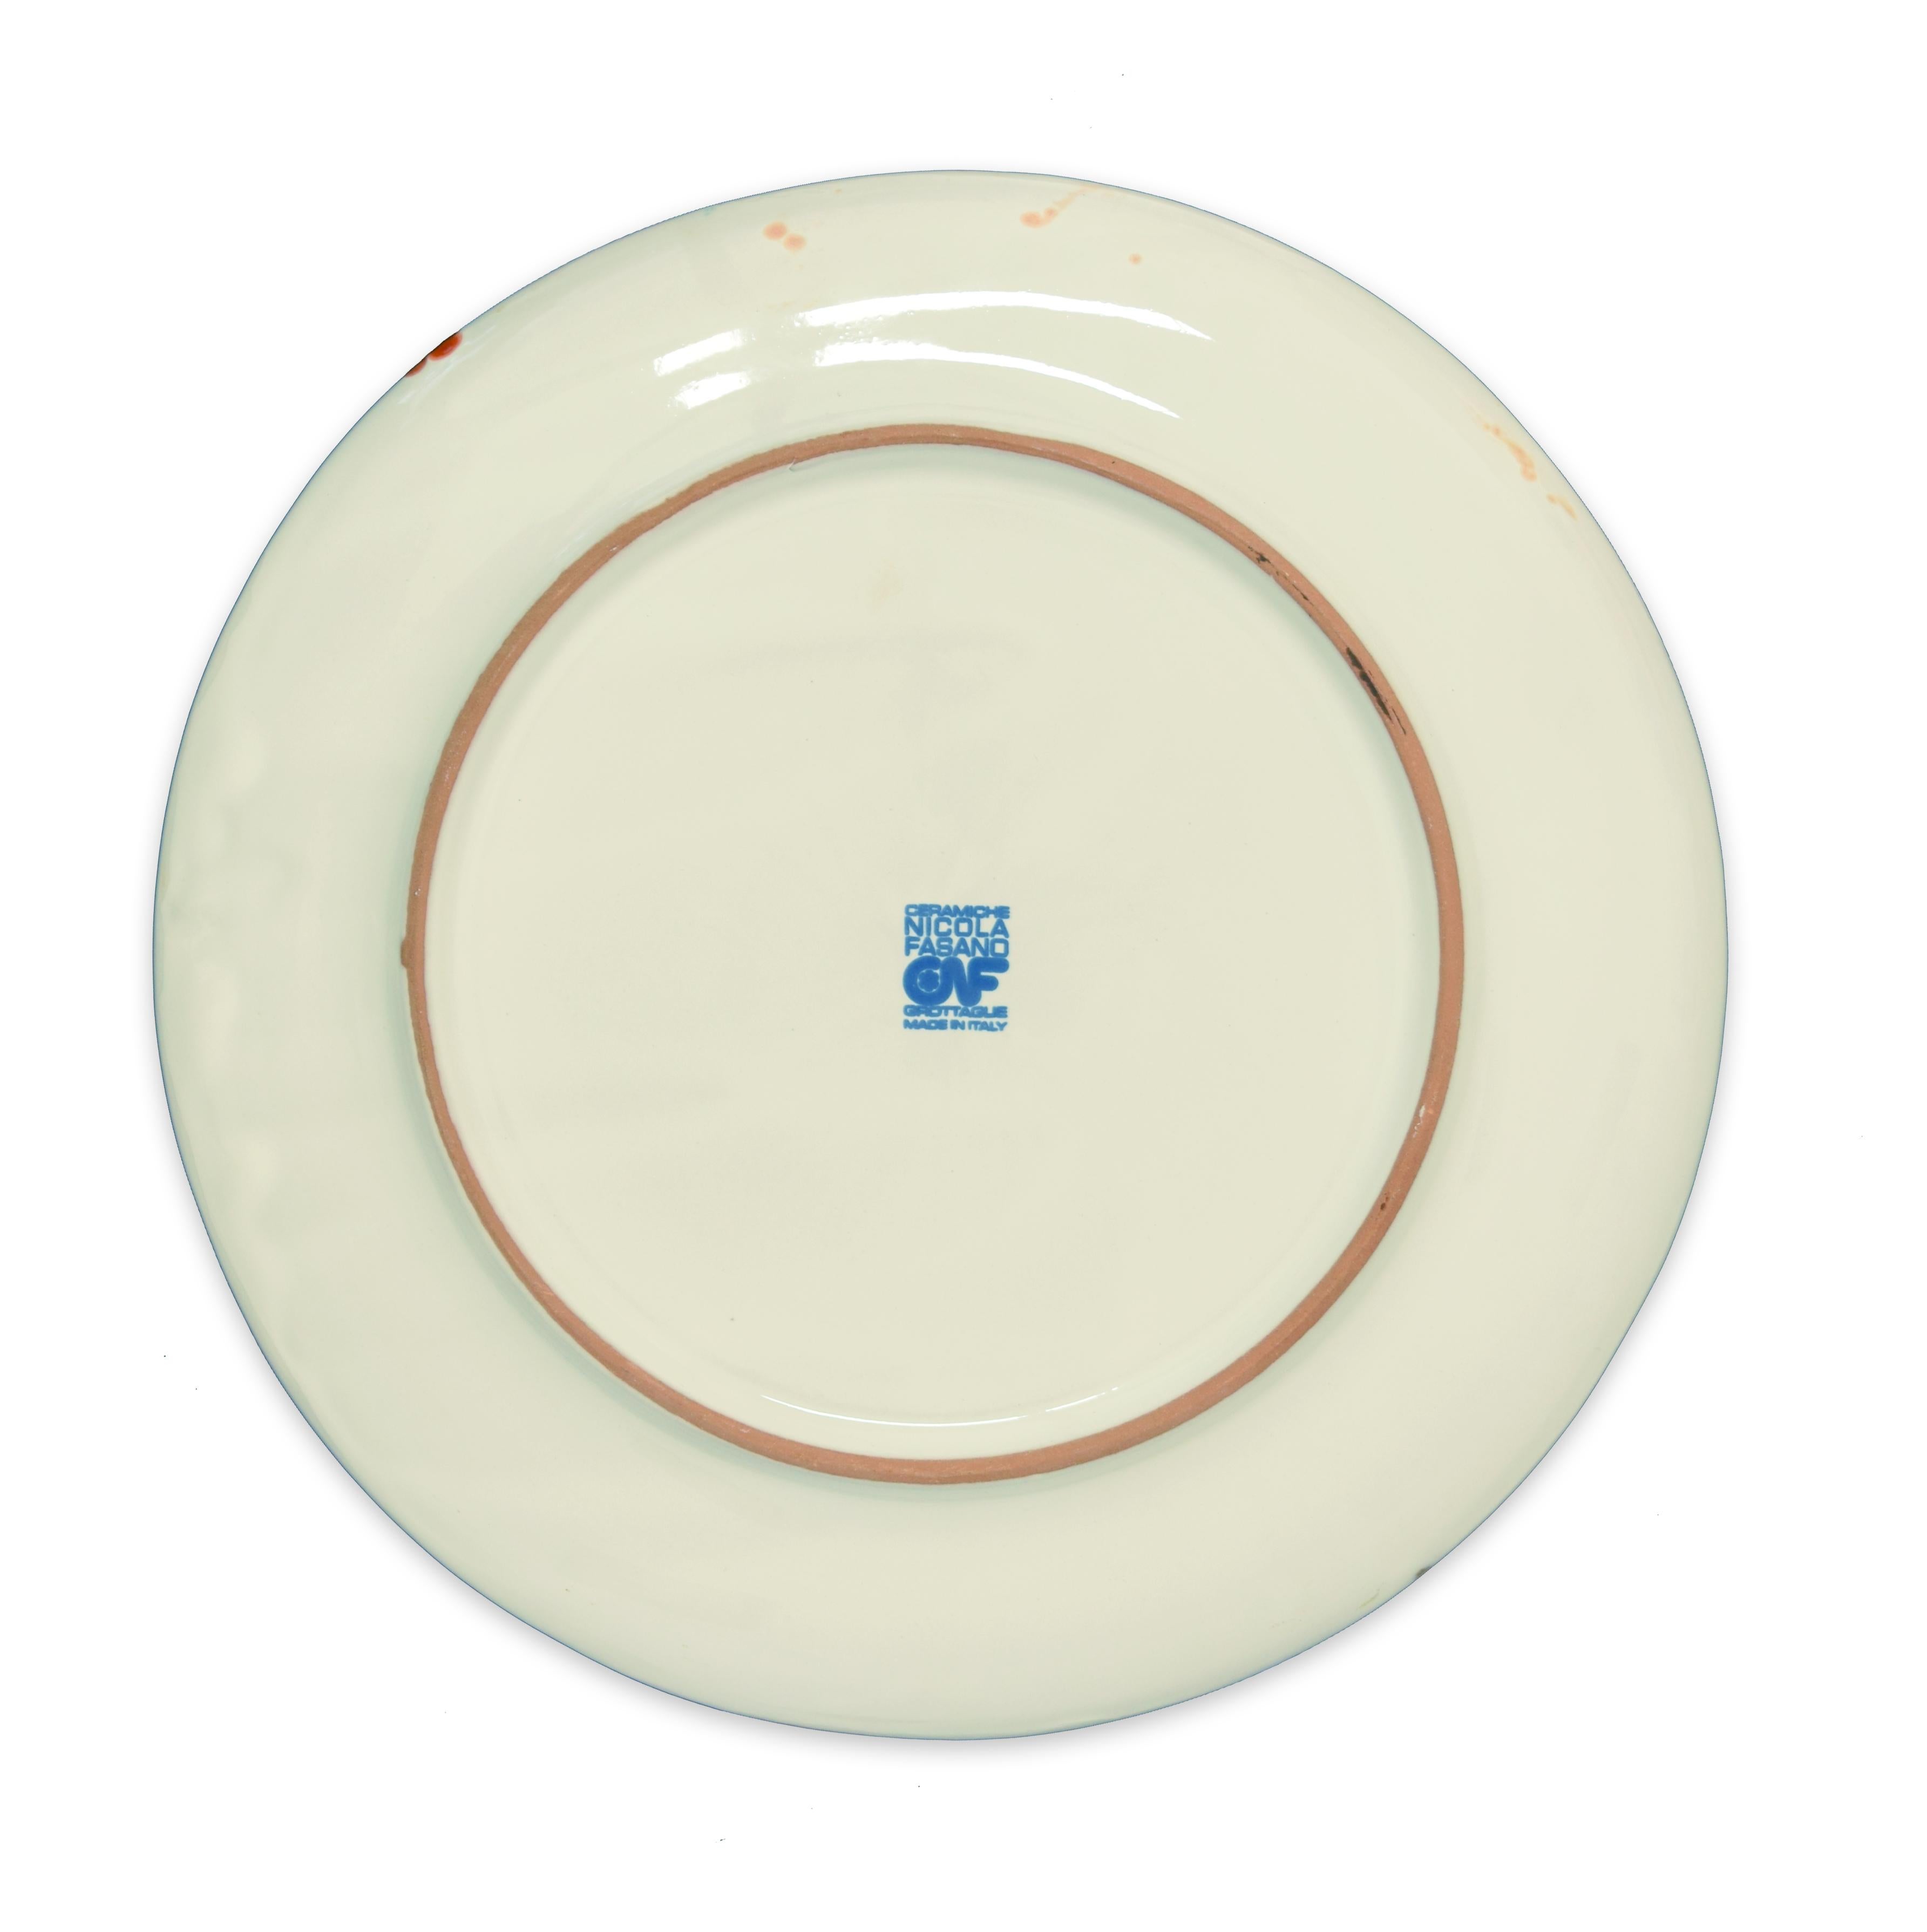 Sight - Hand-made Flat Ceramic Dish by A. Kurakina - 2019 - Contemporary Art by Anastasia Kurakina